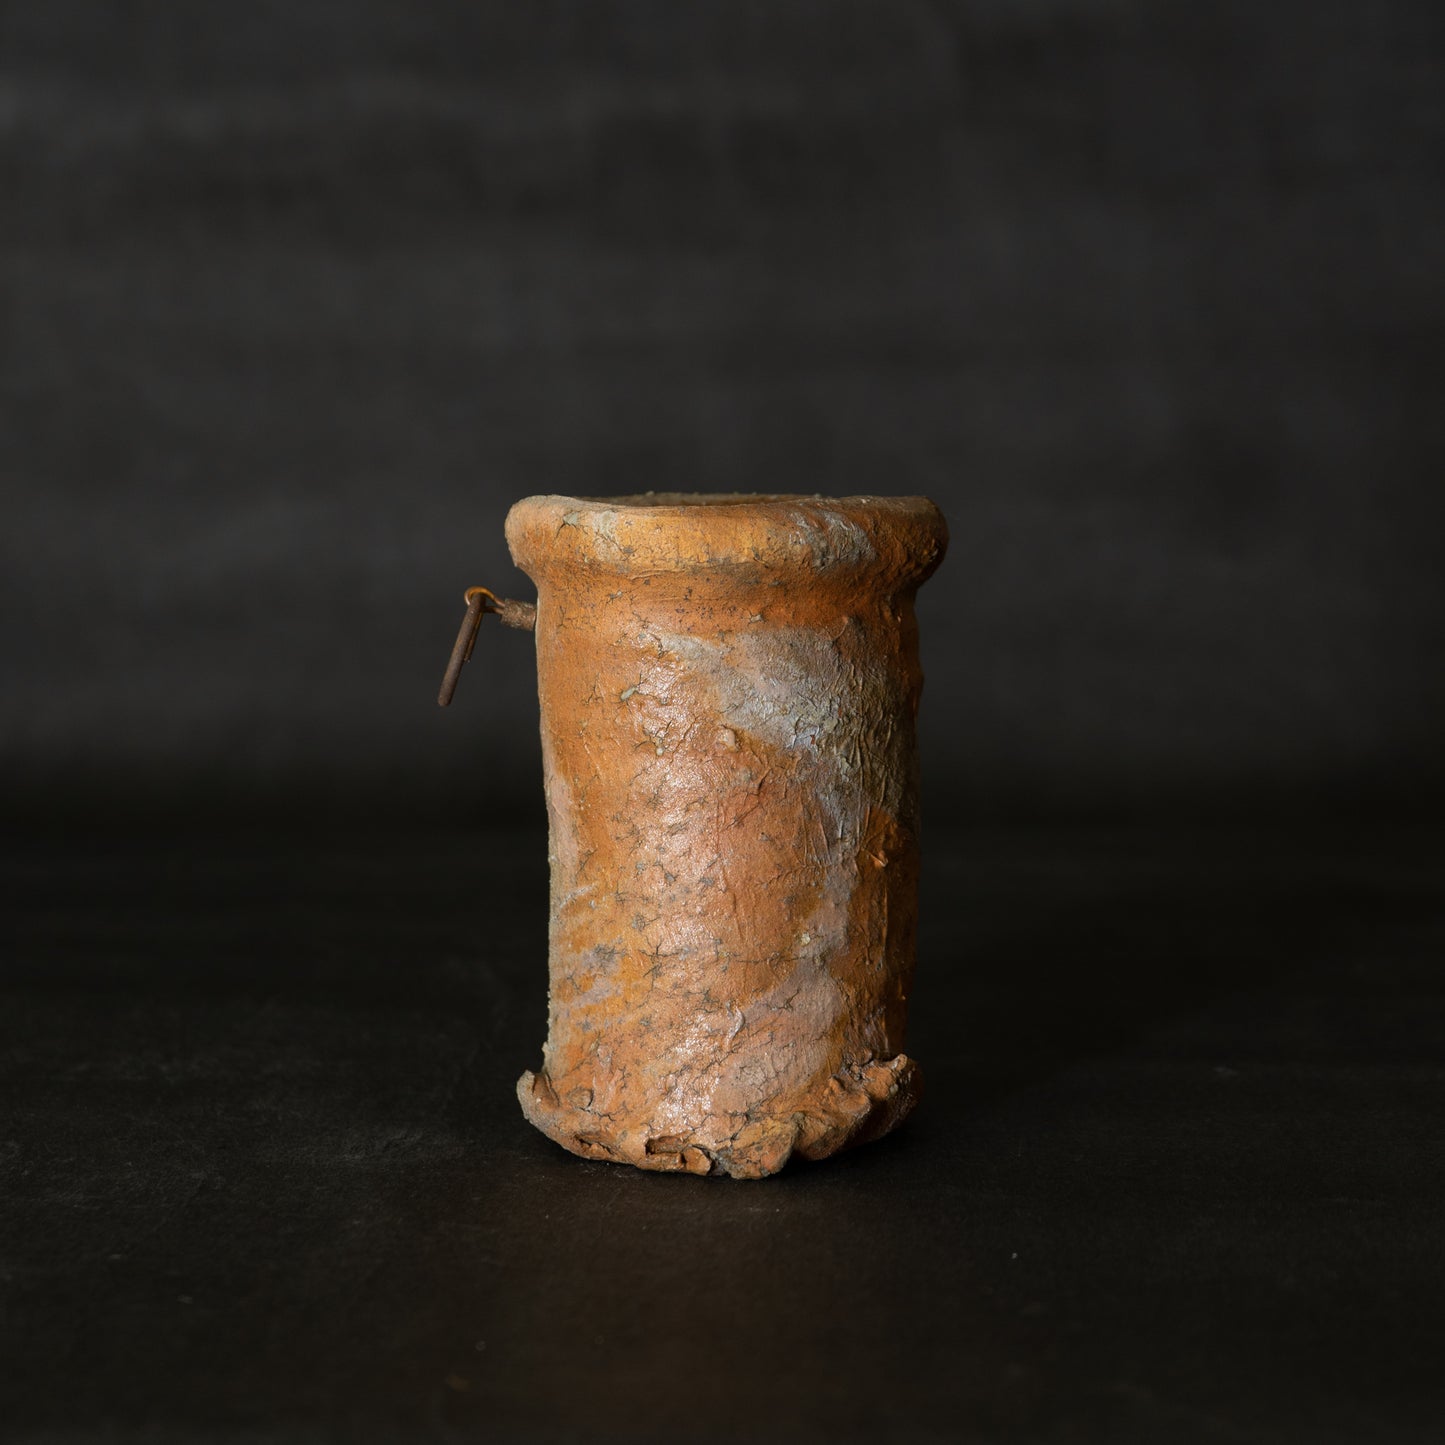 信楽花瓶 (小型) (st00939)